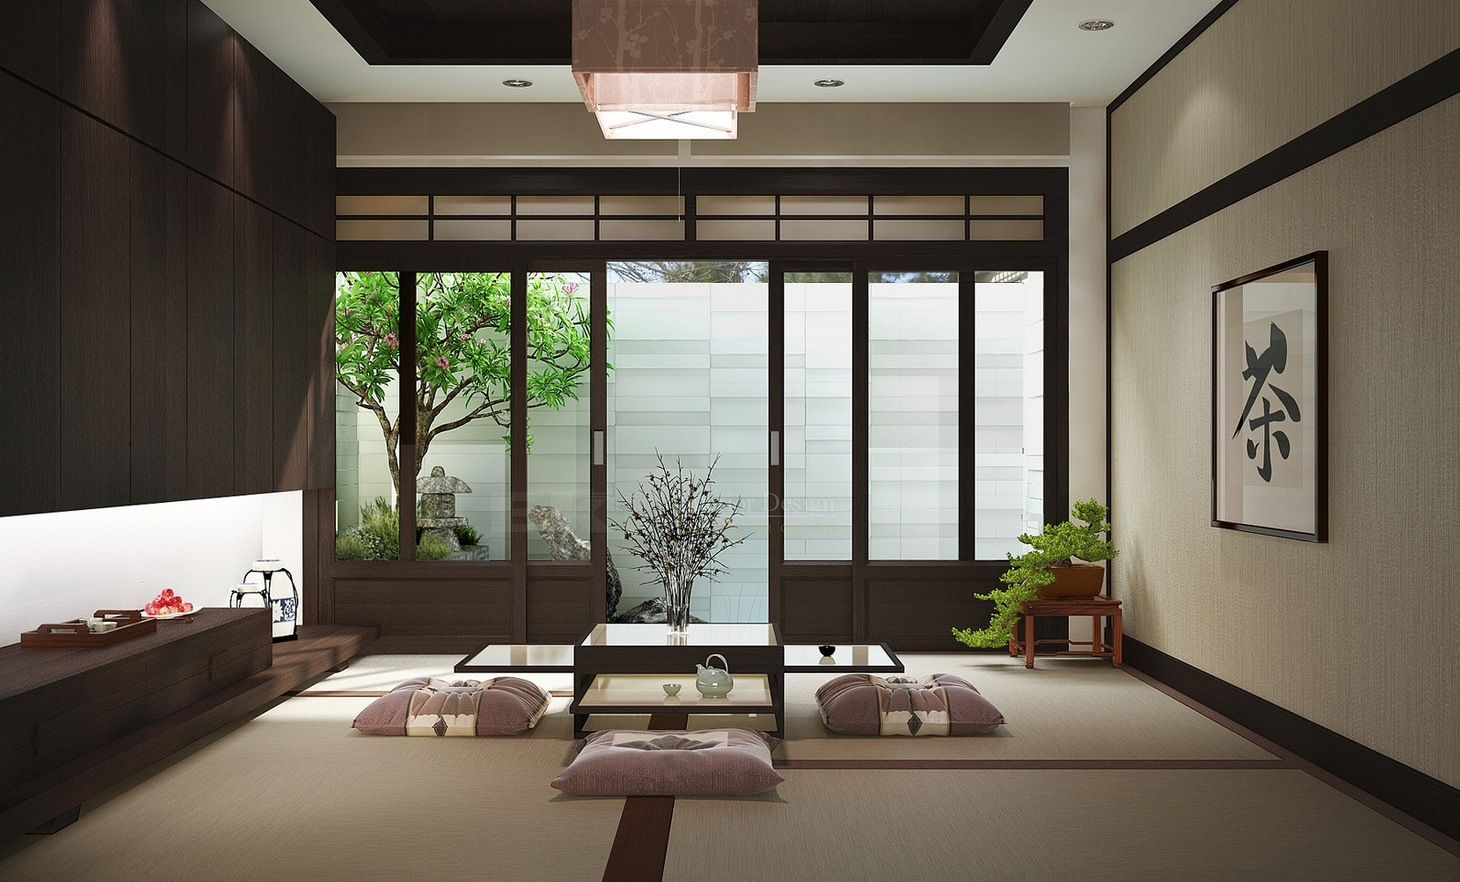 Zen Interiors